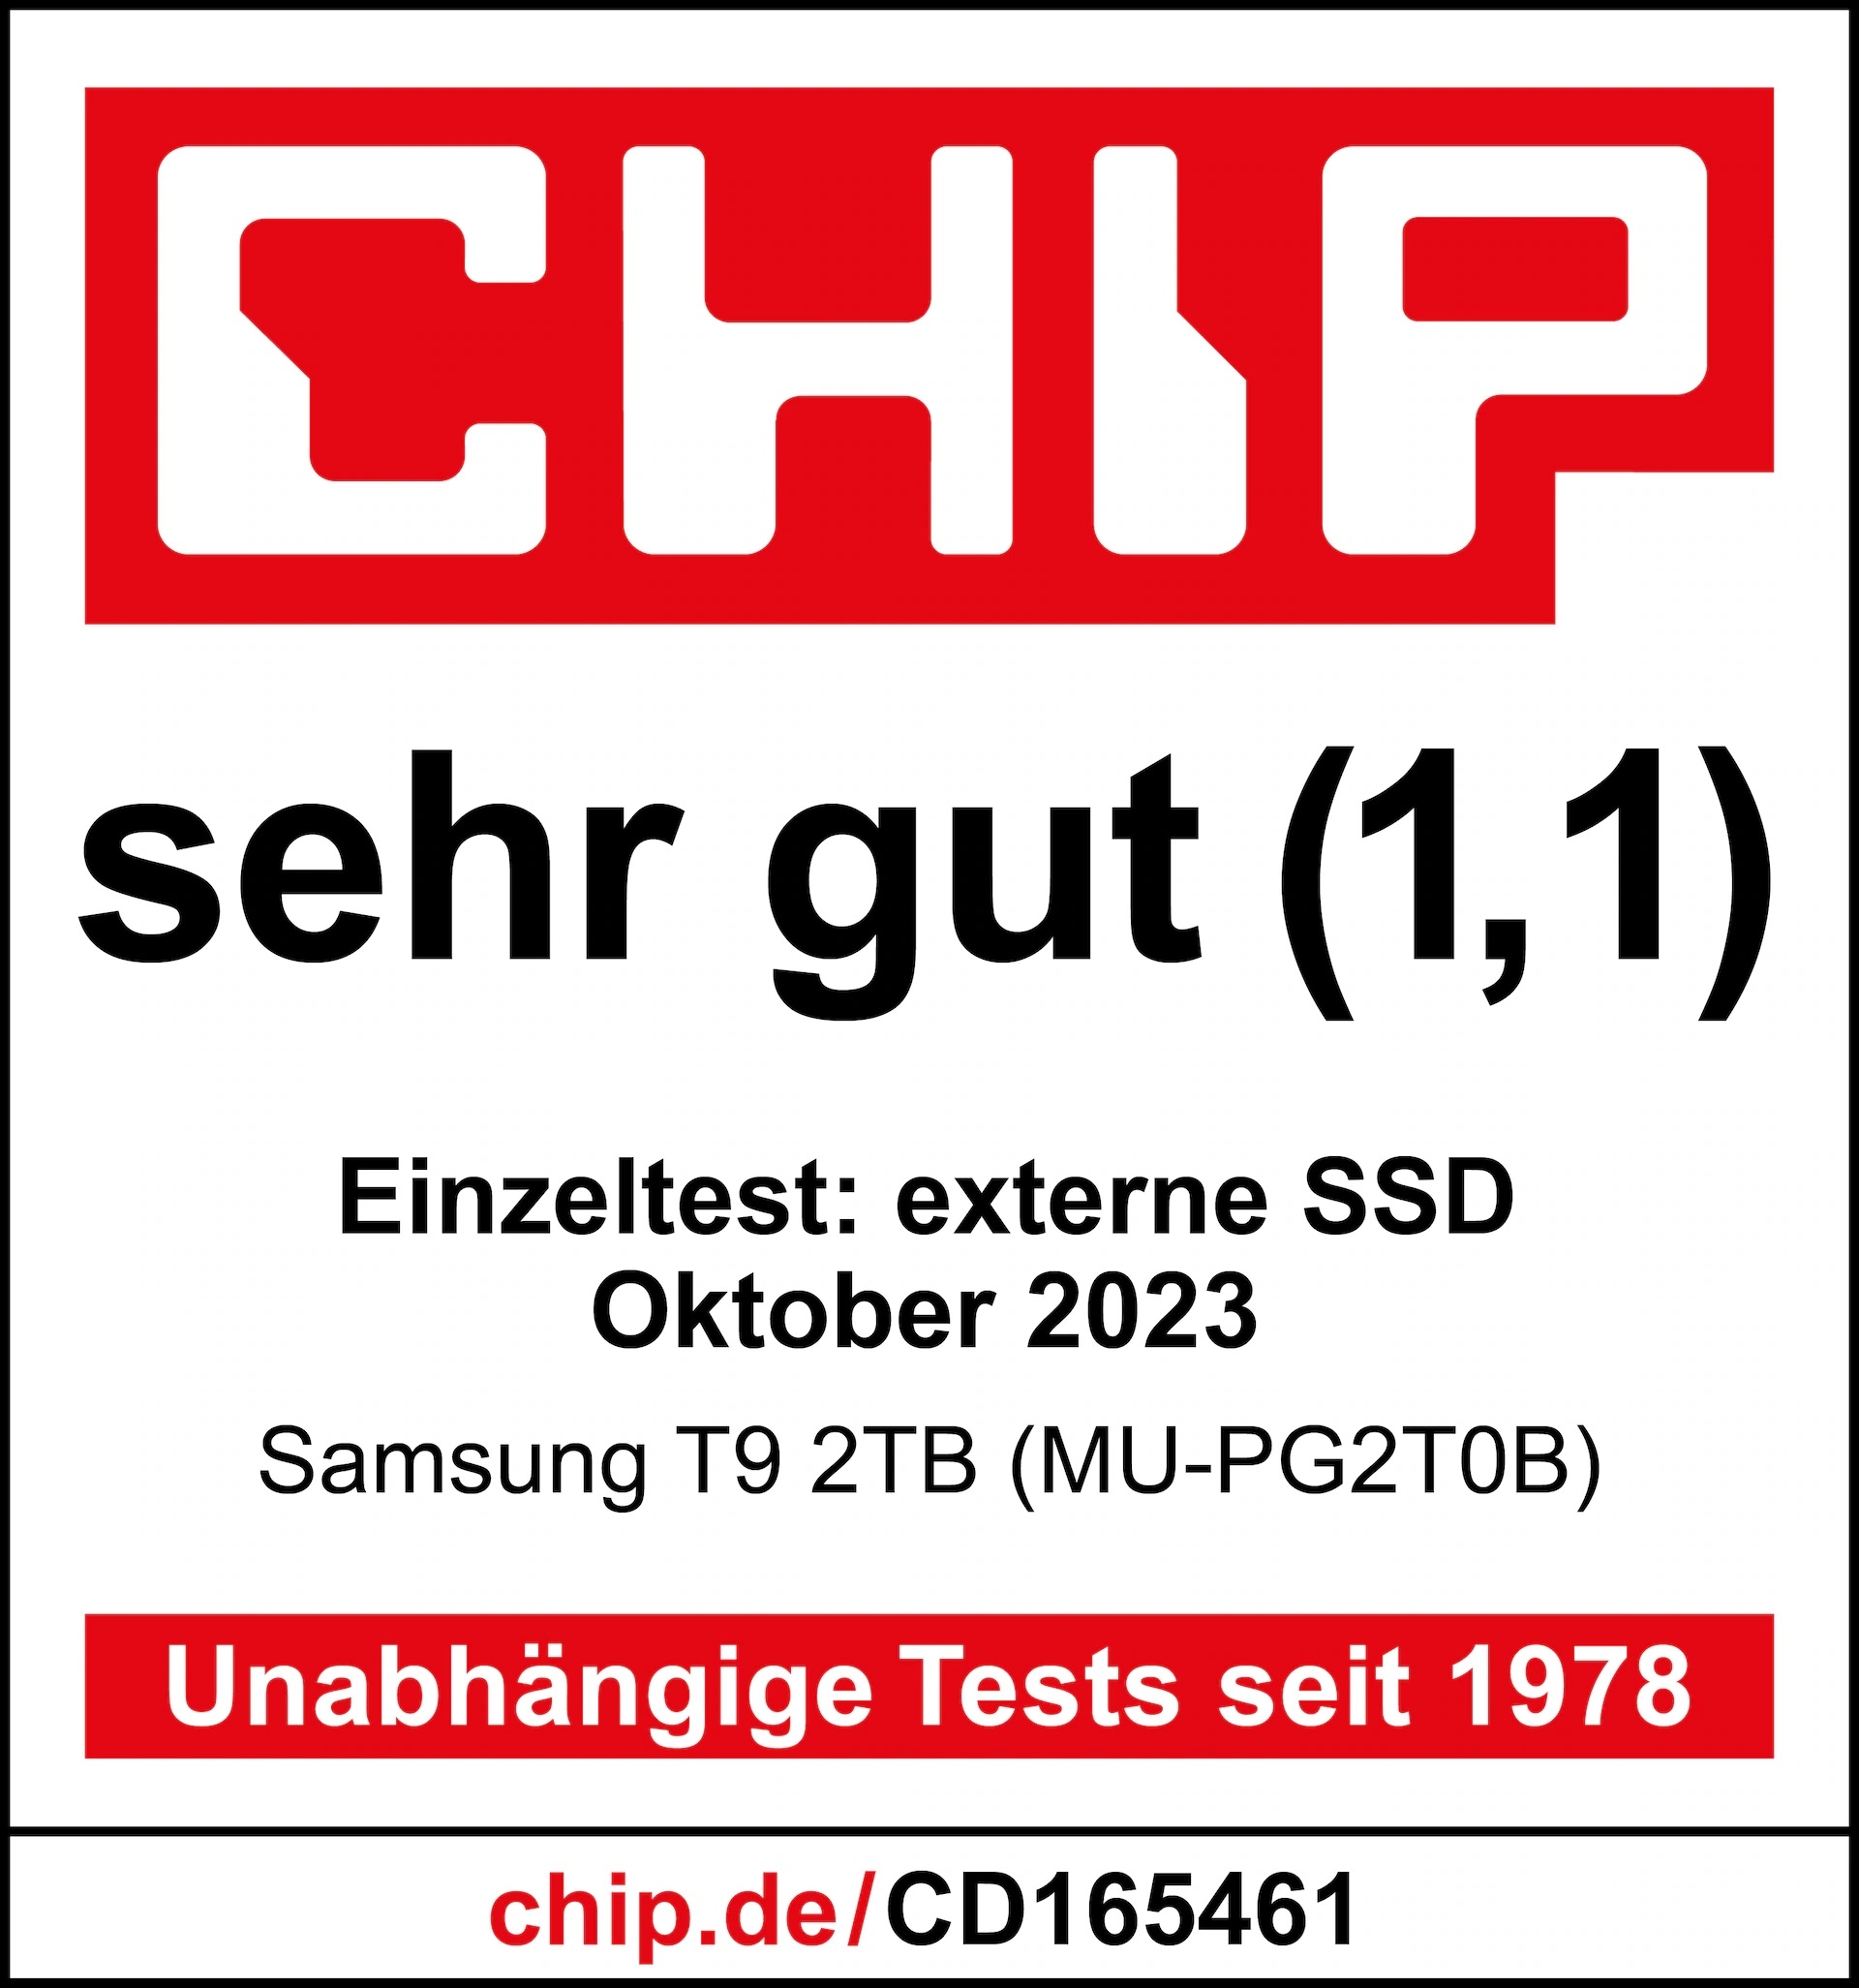 *Quelle: Chip.de, 31.10.2023, https://www.chip.de/test/Samsung-T9-2TB-MU-PG2T0B-im-Test_185005445.html, Einzeltest.